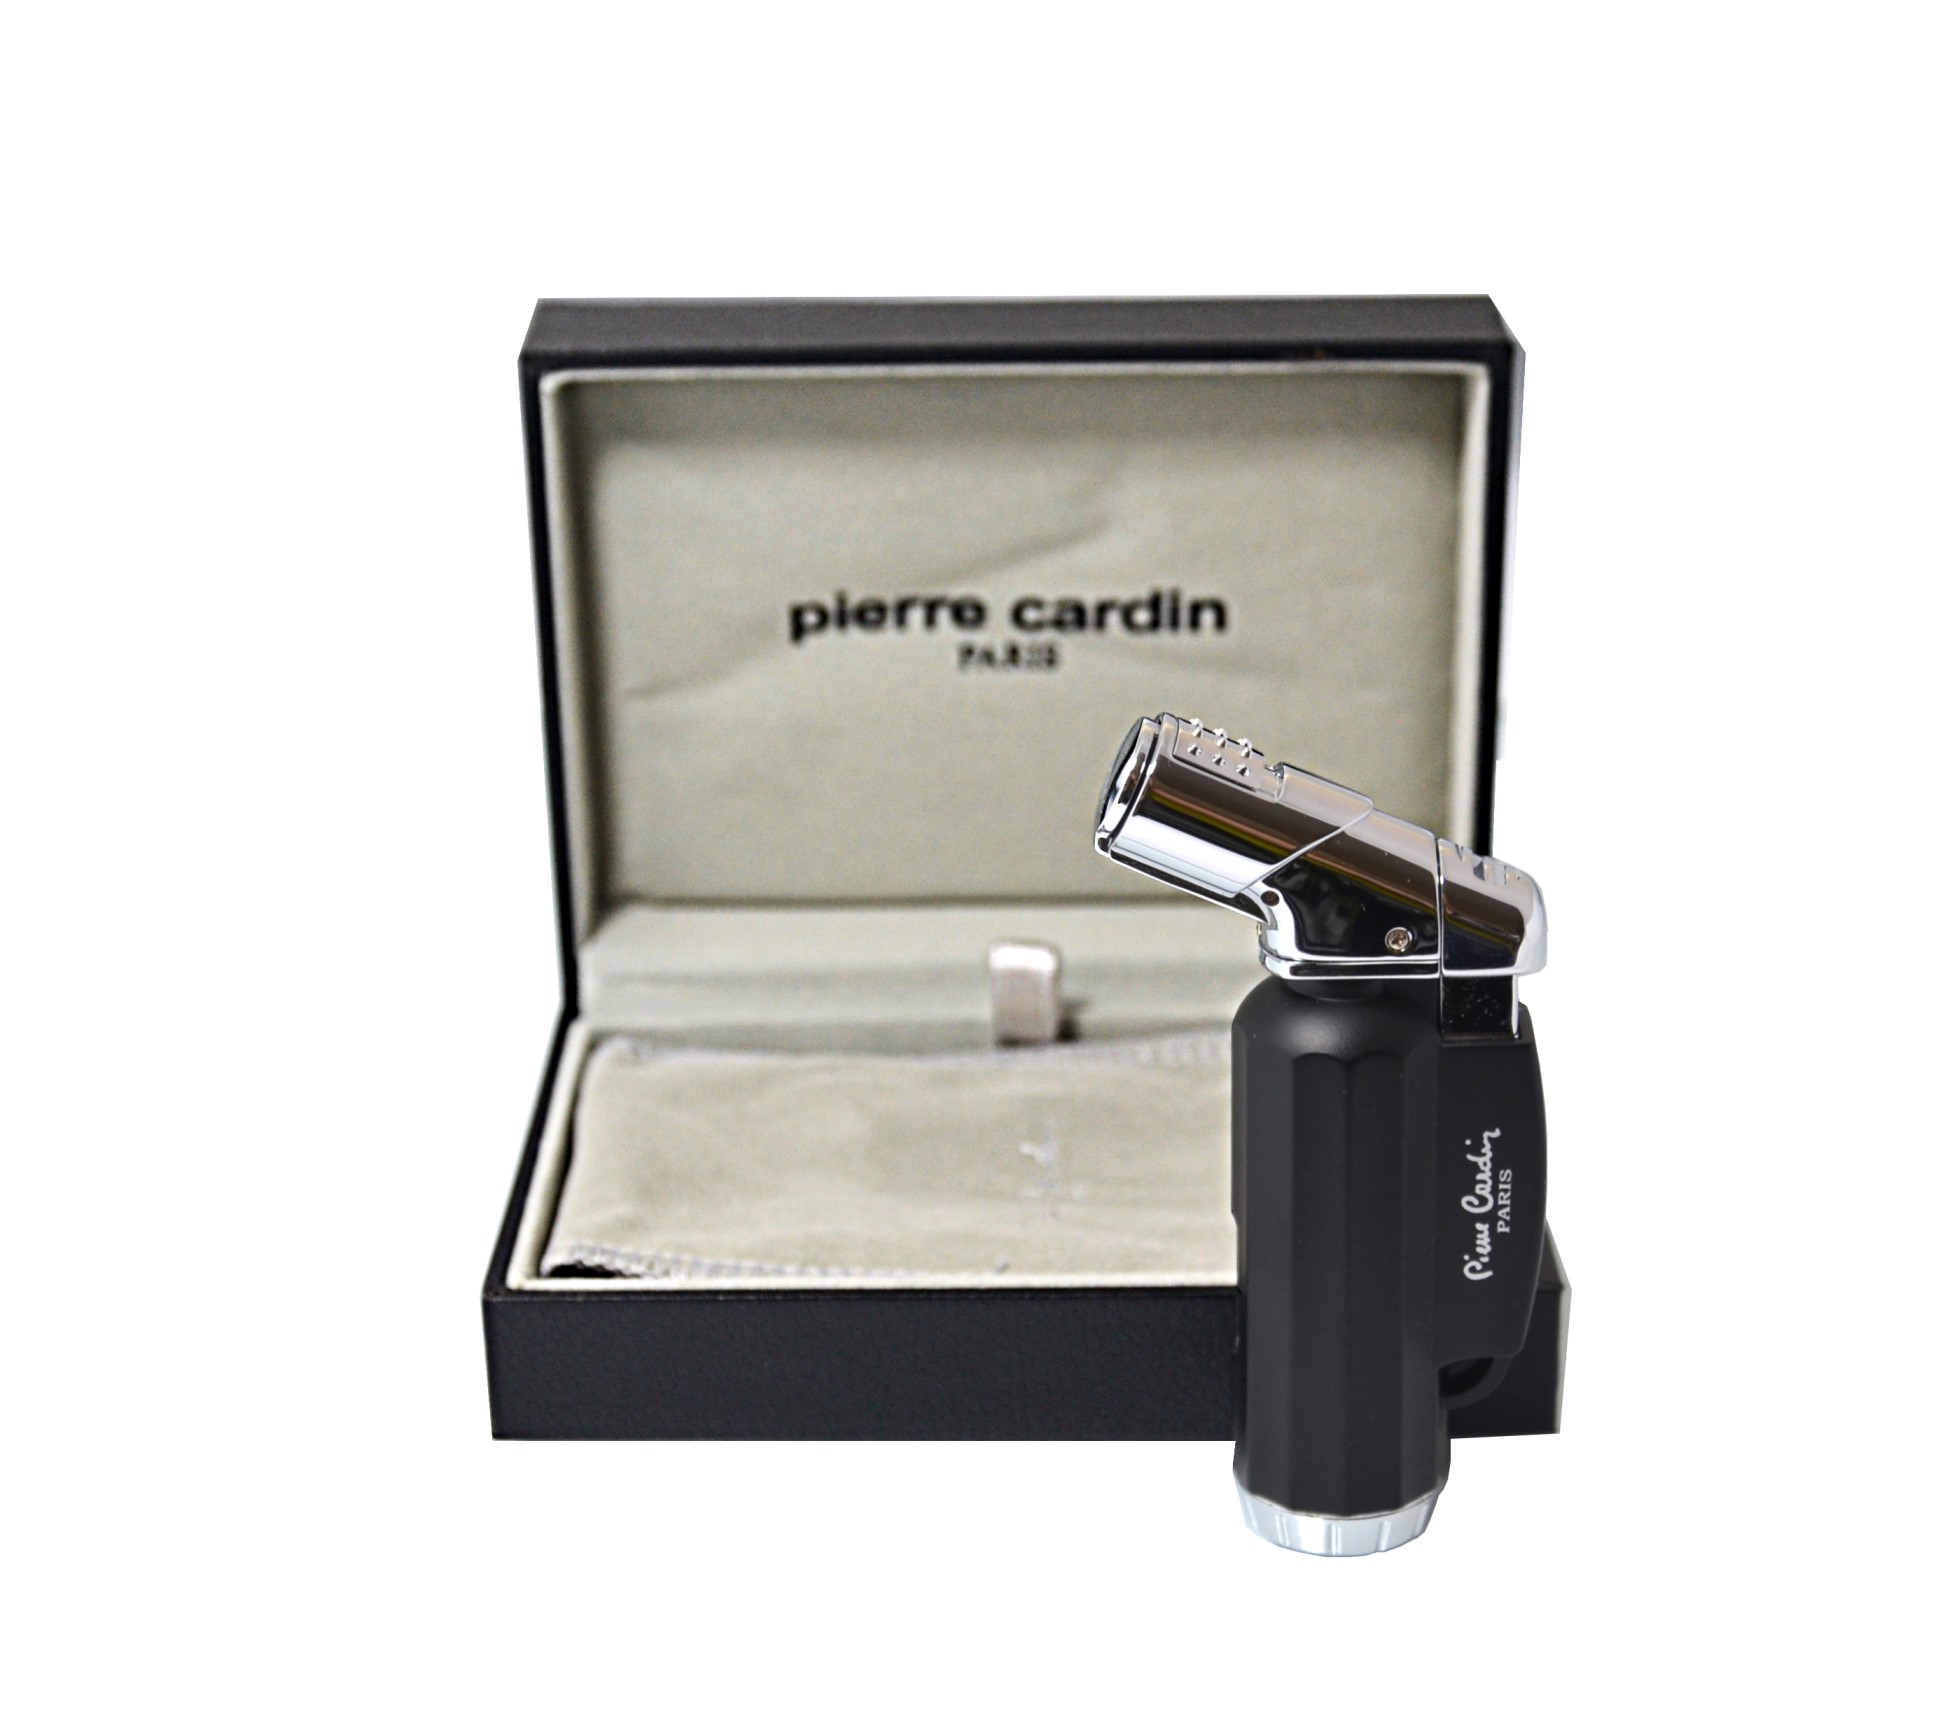 Zapalniczka Pierre Cardin 114901 "Anthenes" gazowa, turbo, metalowa, czarna